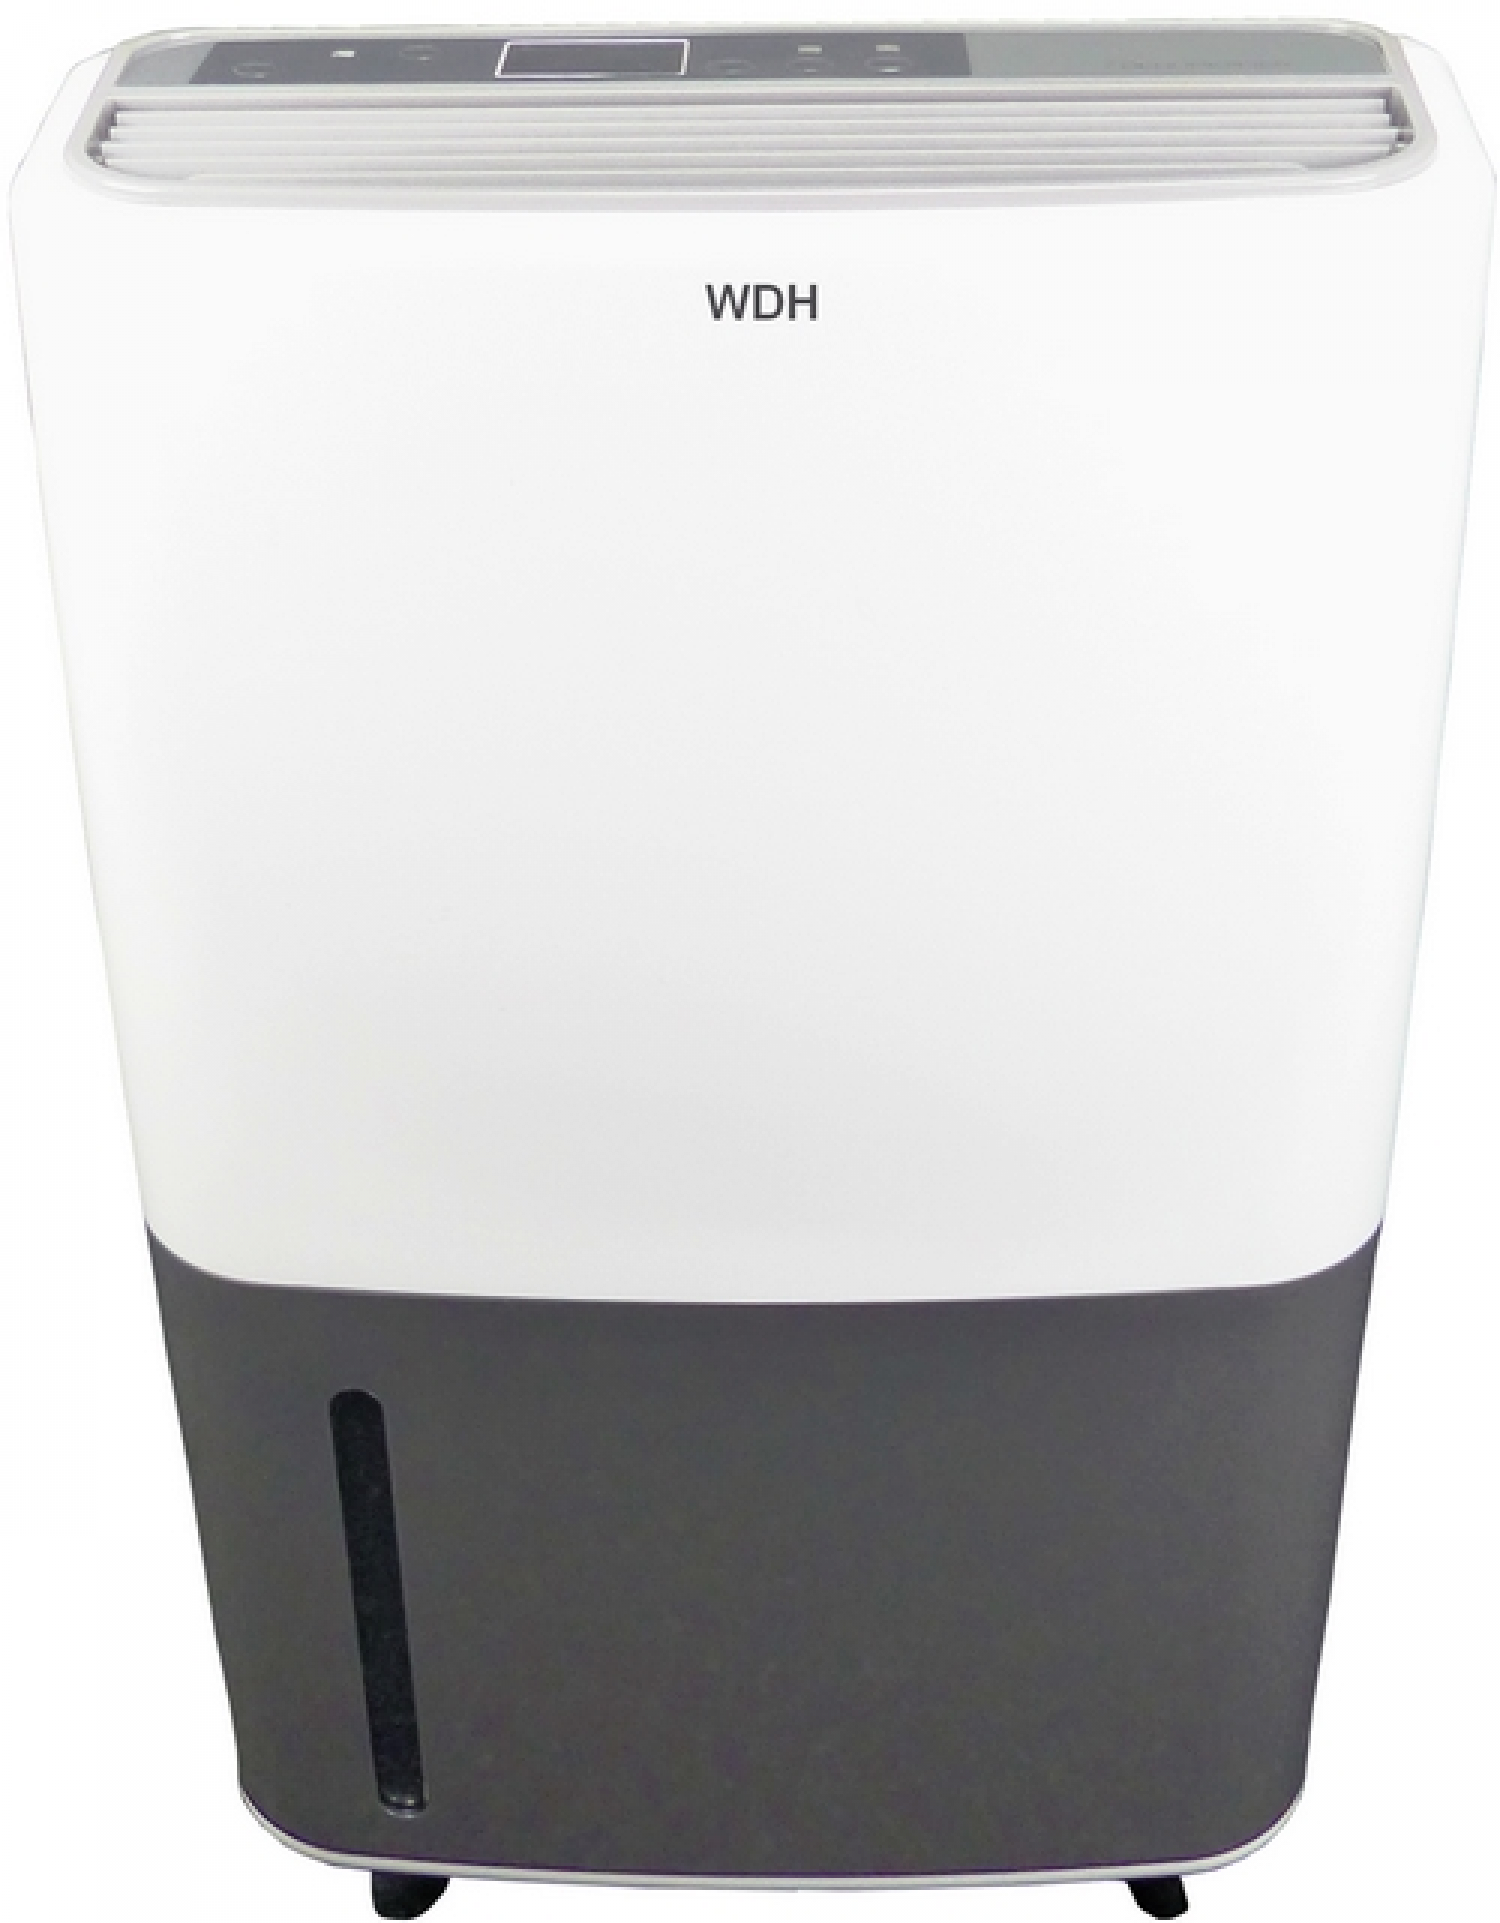 WDH Luftentfeuchter WDH-725DG m²) 1 Entfeuchterleistung: White 65 Raumgröße: Luftentfeuchter (420 Liter/Std., Watt